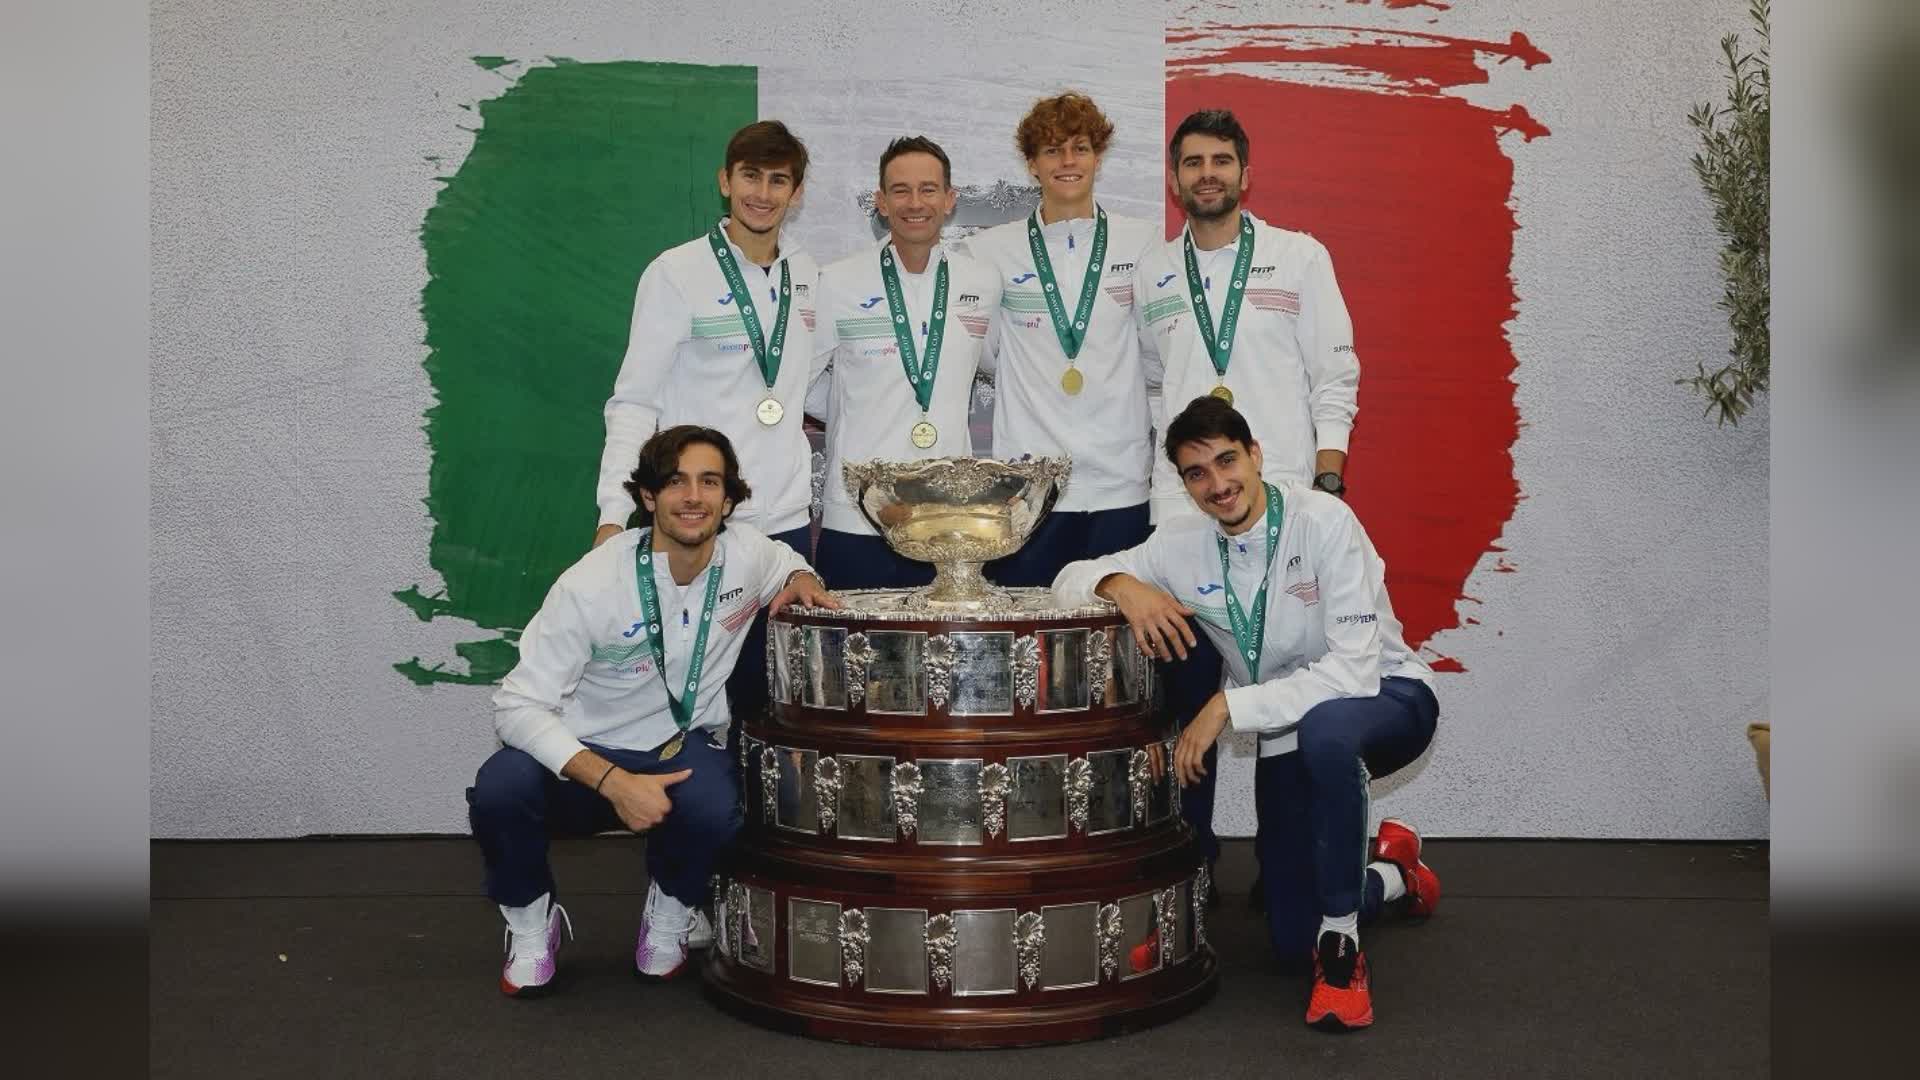 Genova, Coppa Davis: il Trofeo a Palazzo Tursi da venerdì 26, tutti gli eventi collaterali